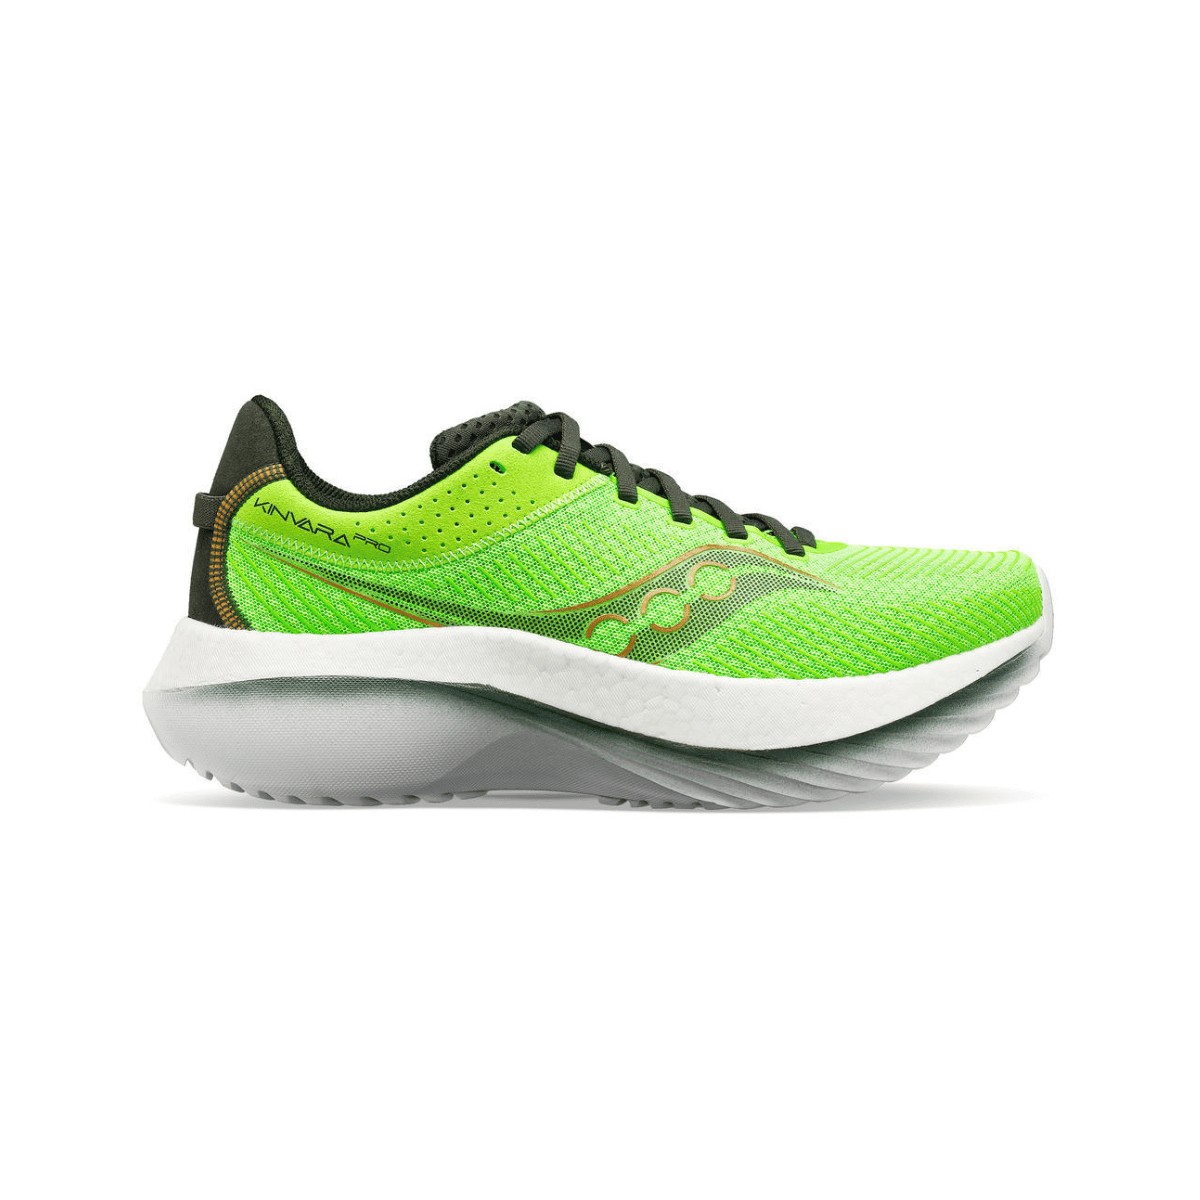 Chaussures de running Saucony Kinvara Pro vert fluo